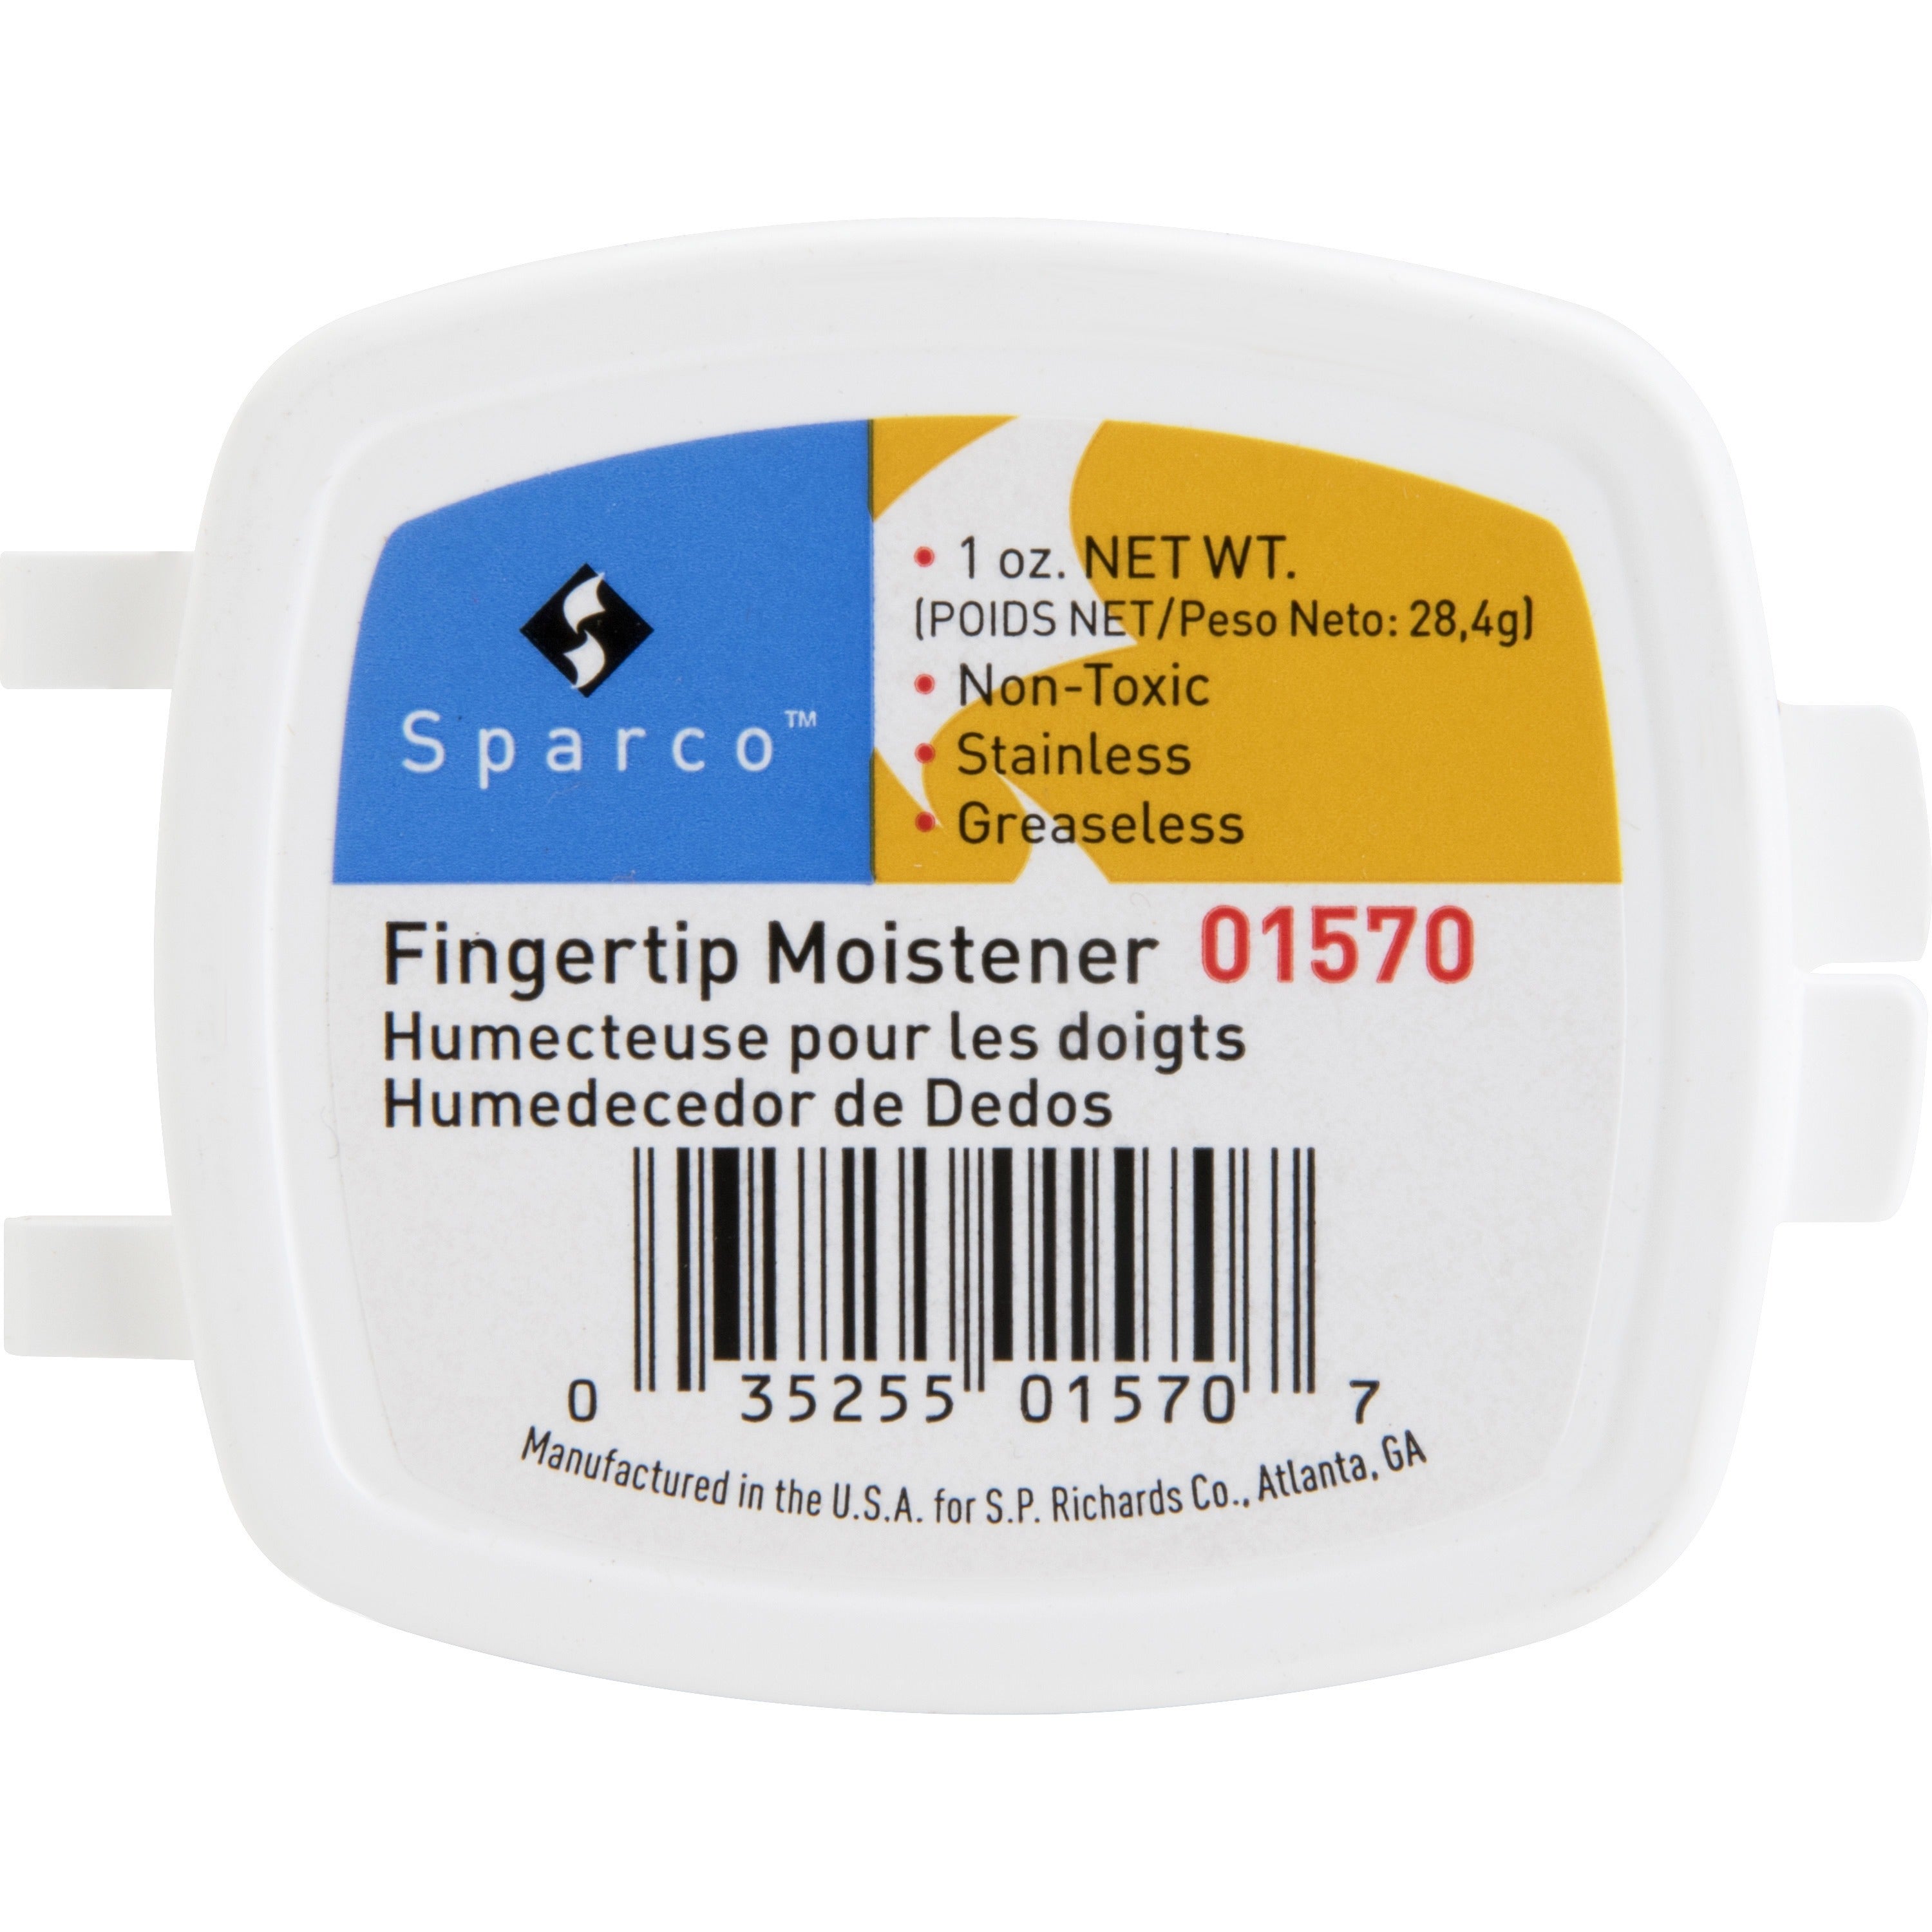 Sparco 1 Ounce Fingertip Moisturizer - White - Odorless, Greaseless, Stainingless, Non-slip - 1 Each - 